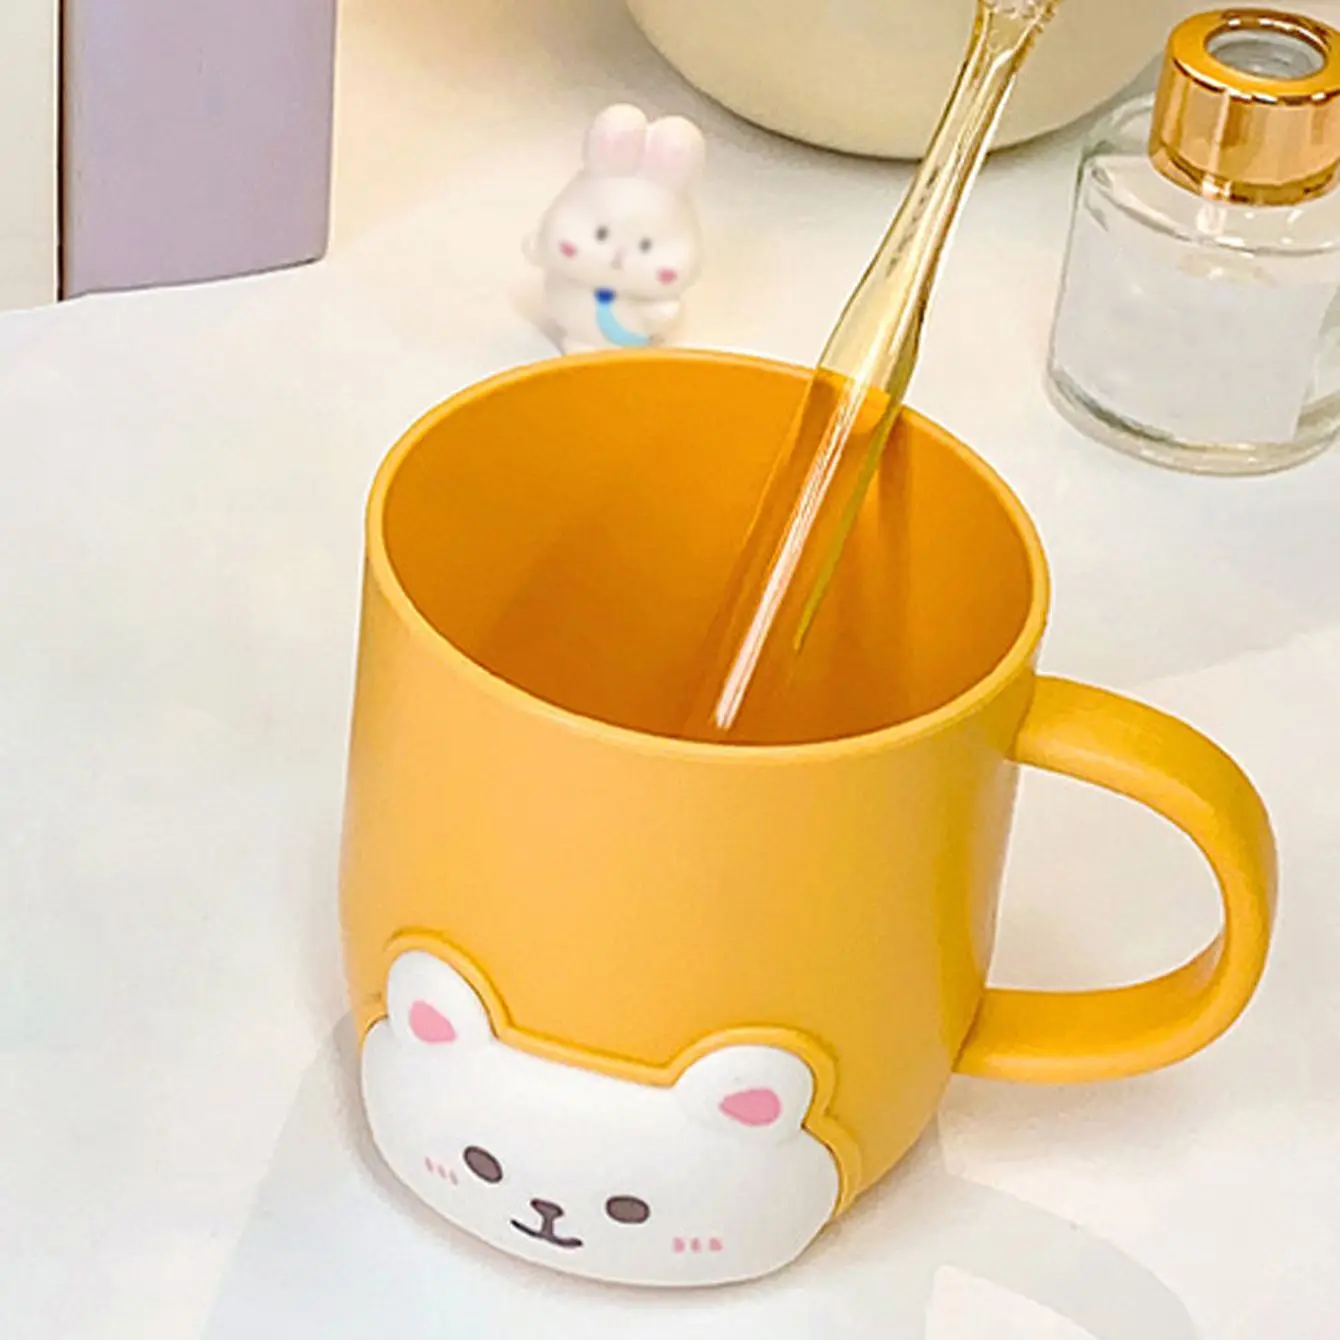 1 шт.-Чашка для воды Bear, утолщающая чашку для полоскания в ванной, с ручкой, чашка для чистки зубов и мытья посуды в студенческом общежитии-случайный цвет